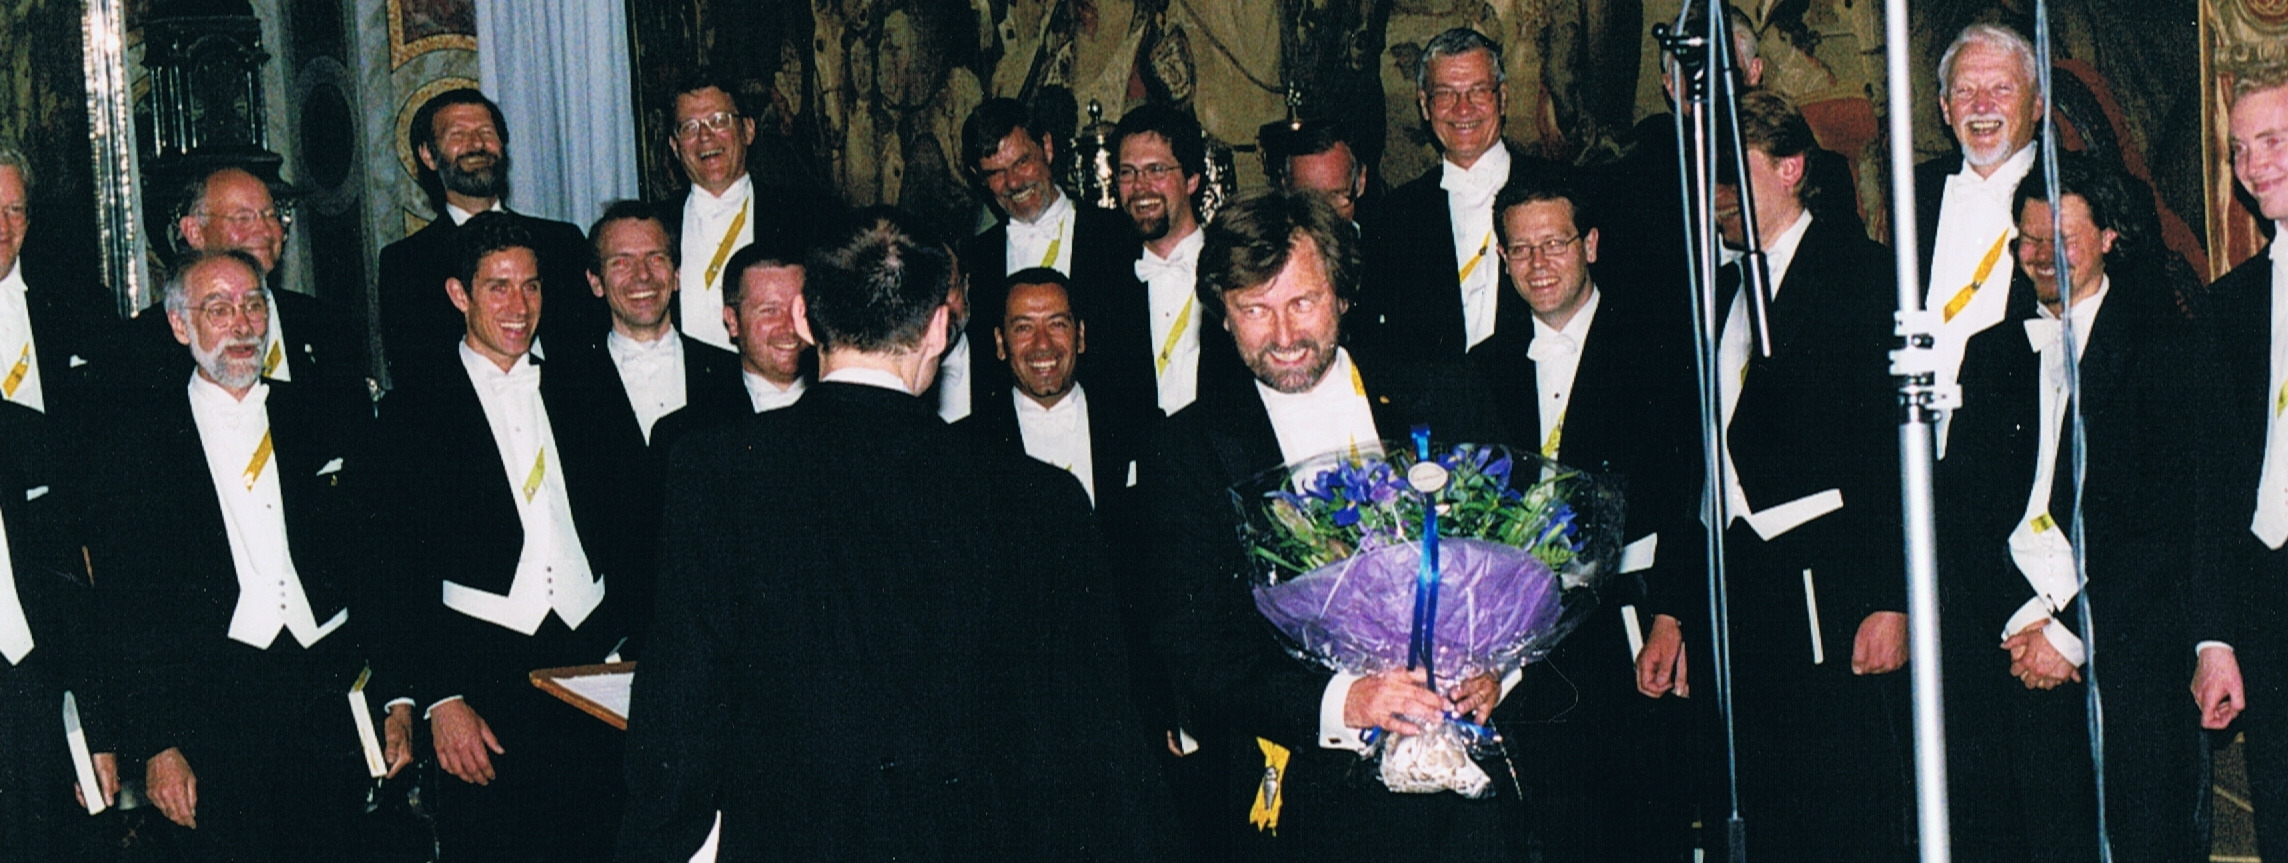 2001 Rosenborg koncertkoret (basser)